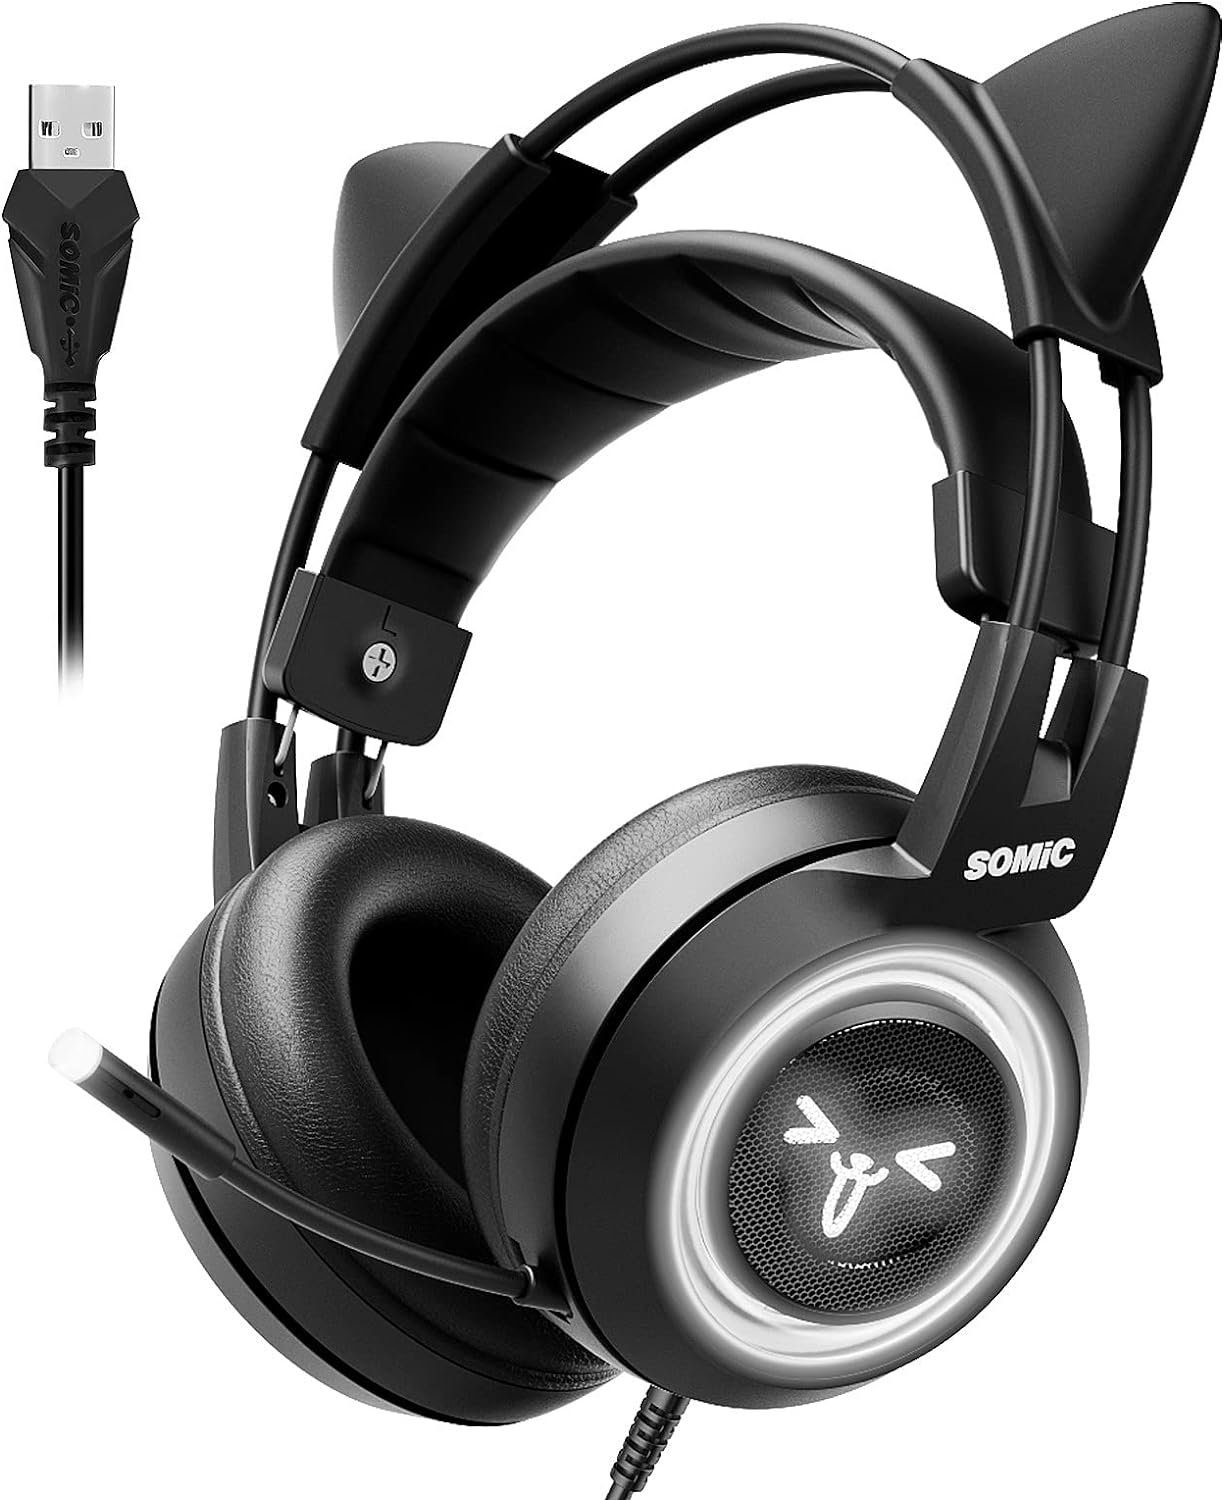 Somic GS510 Gaming-Headset (Virtueller ein schwarz) 7.1 , eindringliches Gaming-Headset Audioerlebnis. Surround Sound LED-Licht, mit Surround 7.1 für Sound